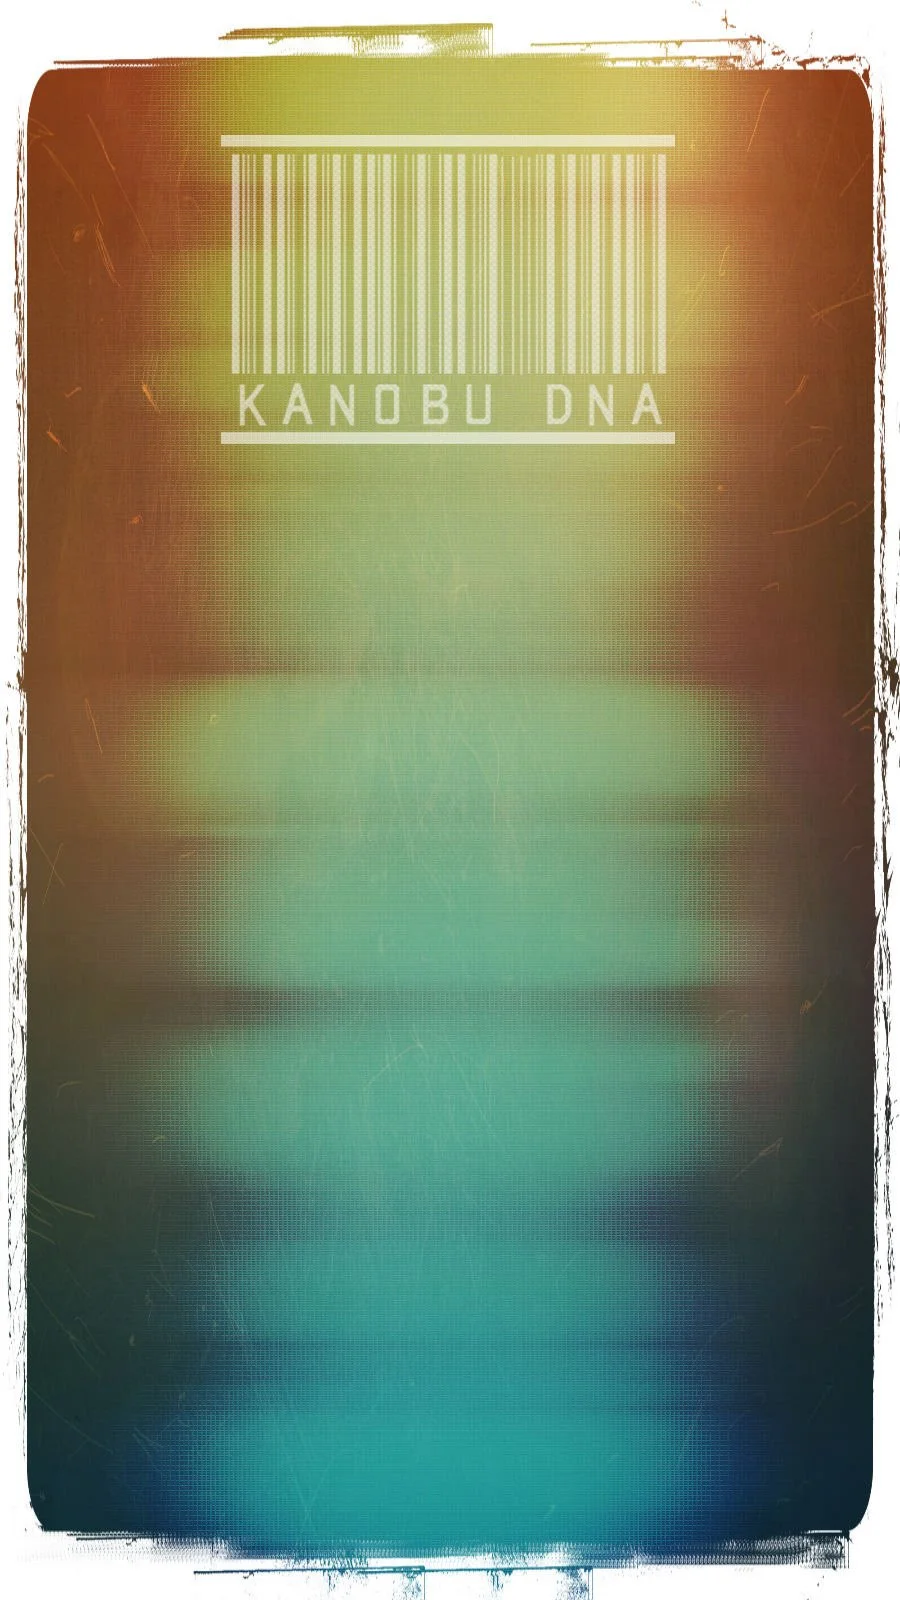 Друзья! В рамках глобального проекта Kanobu DNA я рад вам представить свою маленькую авторскую рубрику под названием Kanobu-Info. Что это такое? Об этом сейчас и пойдет речь.